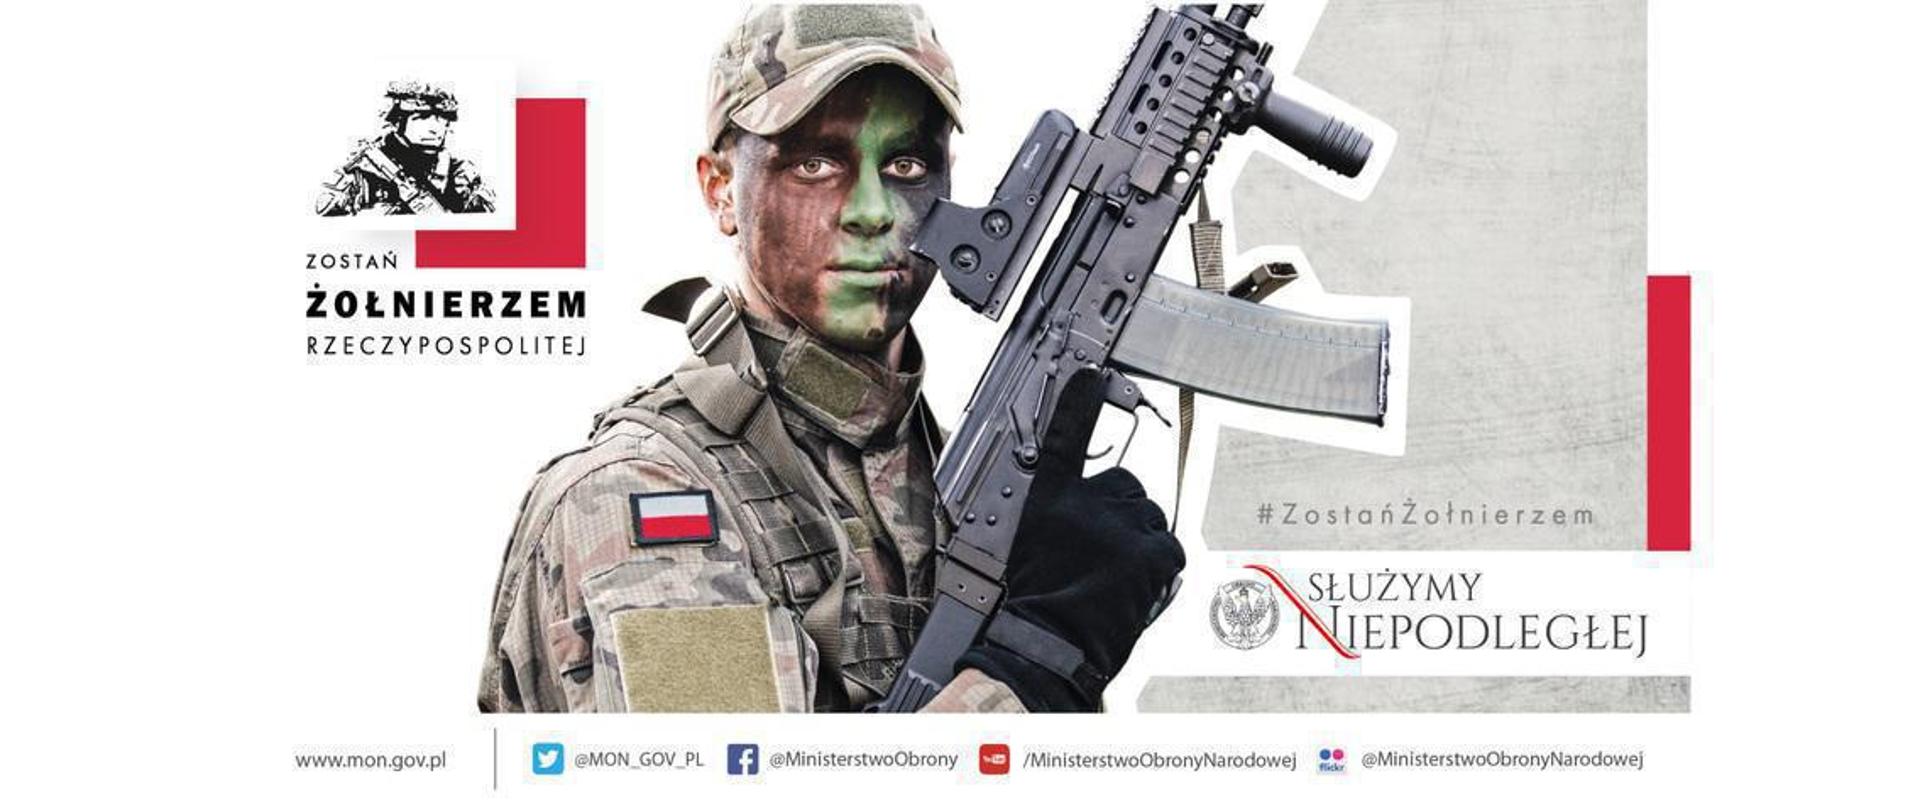 Plakat kampanii zostań żołnierzem